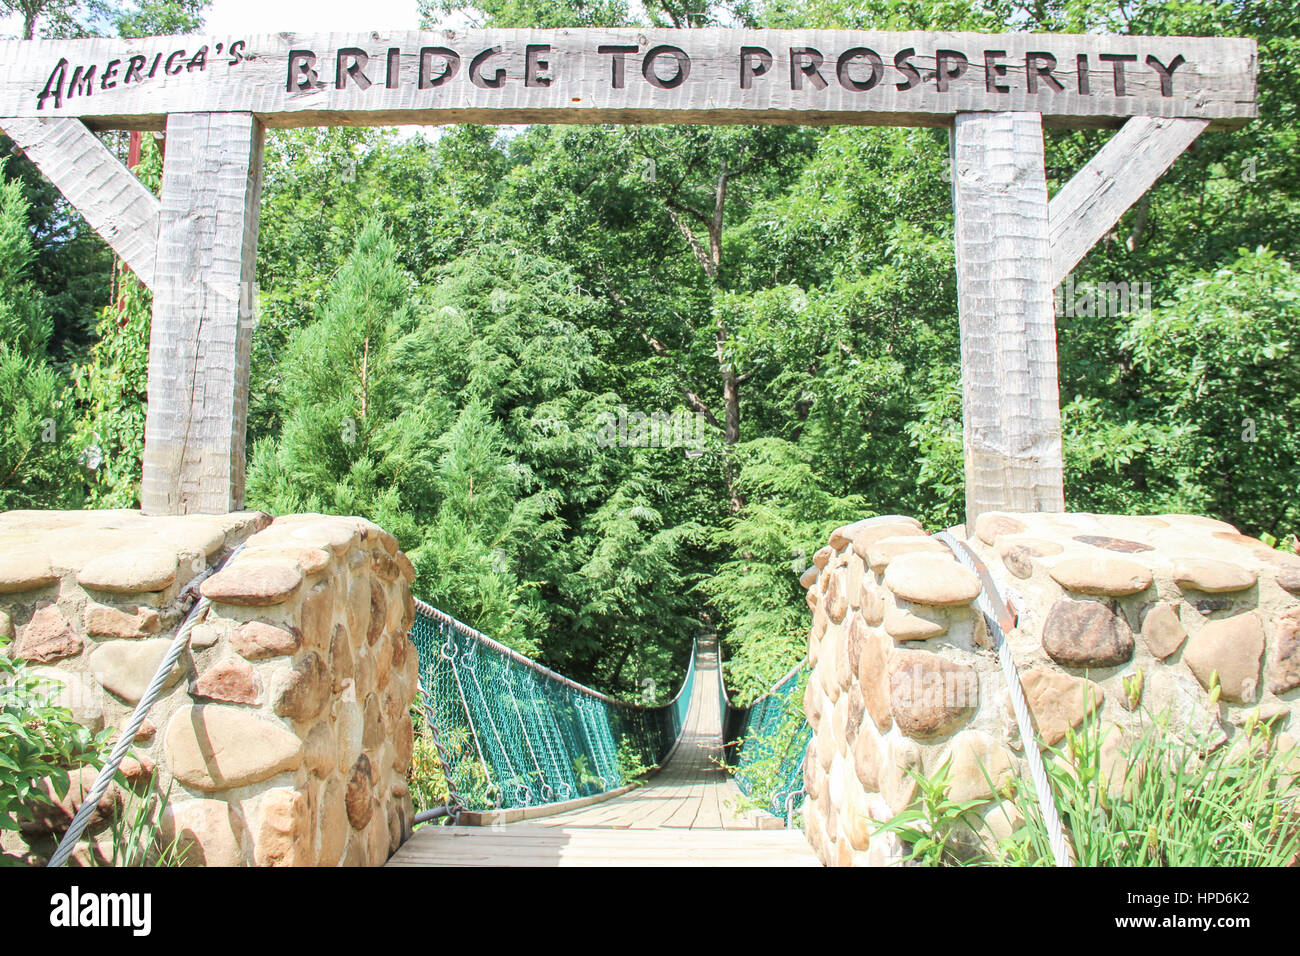 'America's Bridge to Prosperity' at Foxfire Farm Mountain Adventure in Tennessee Stock Photo